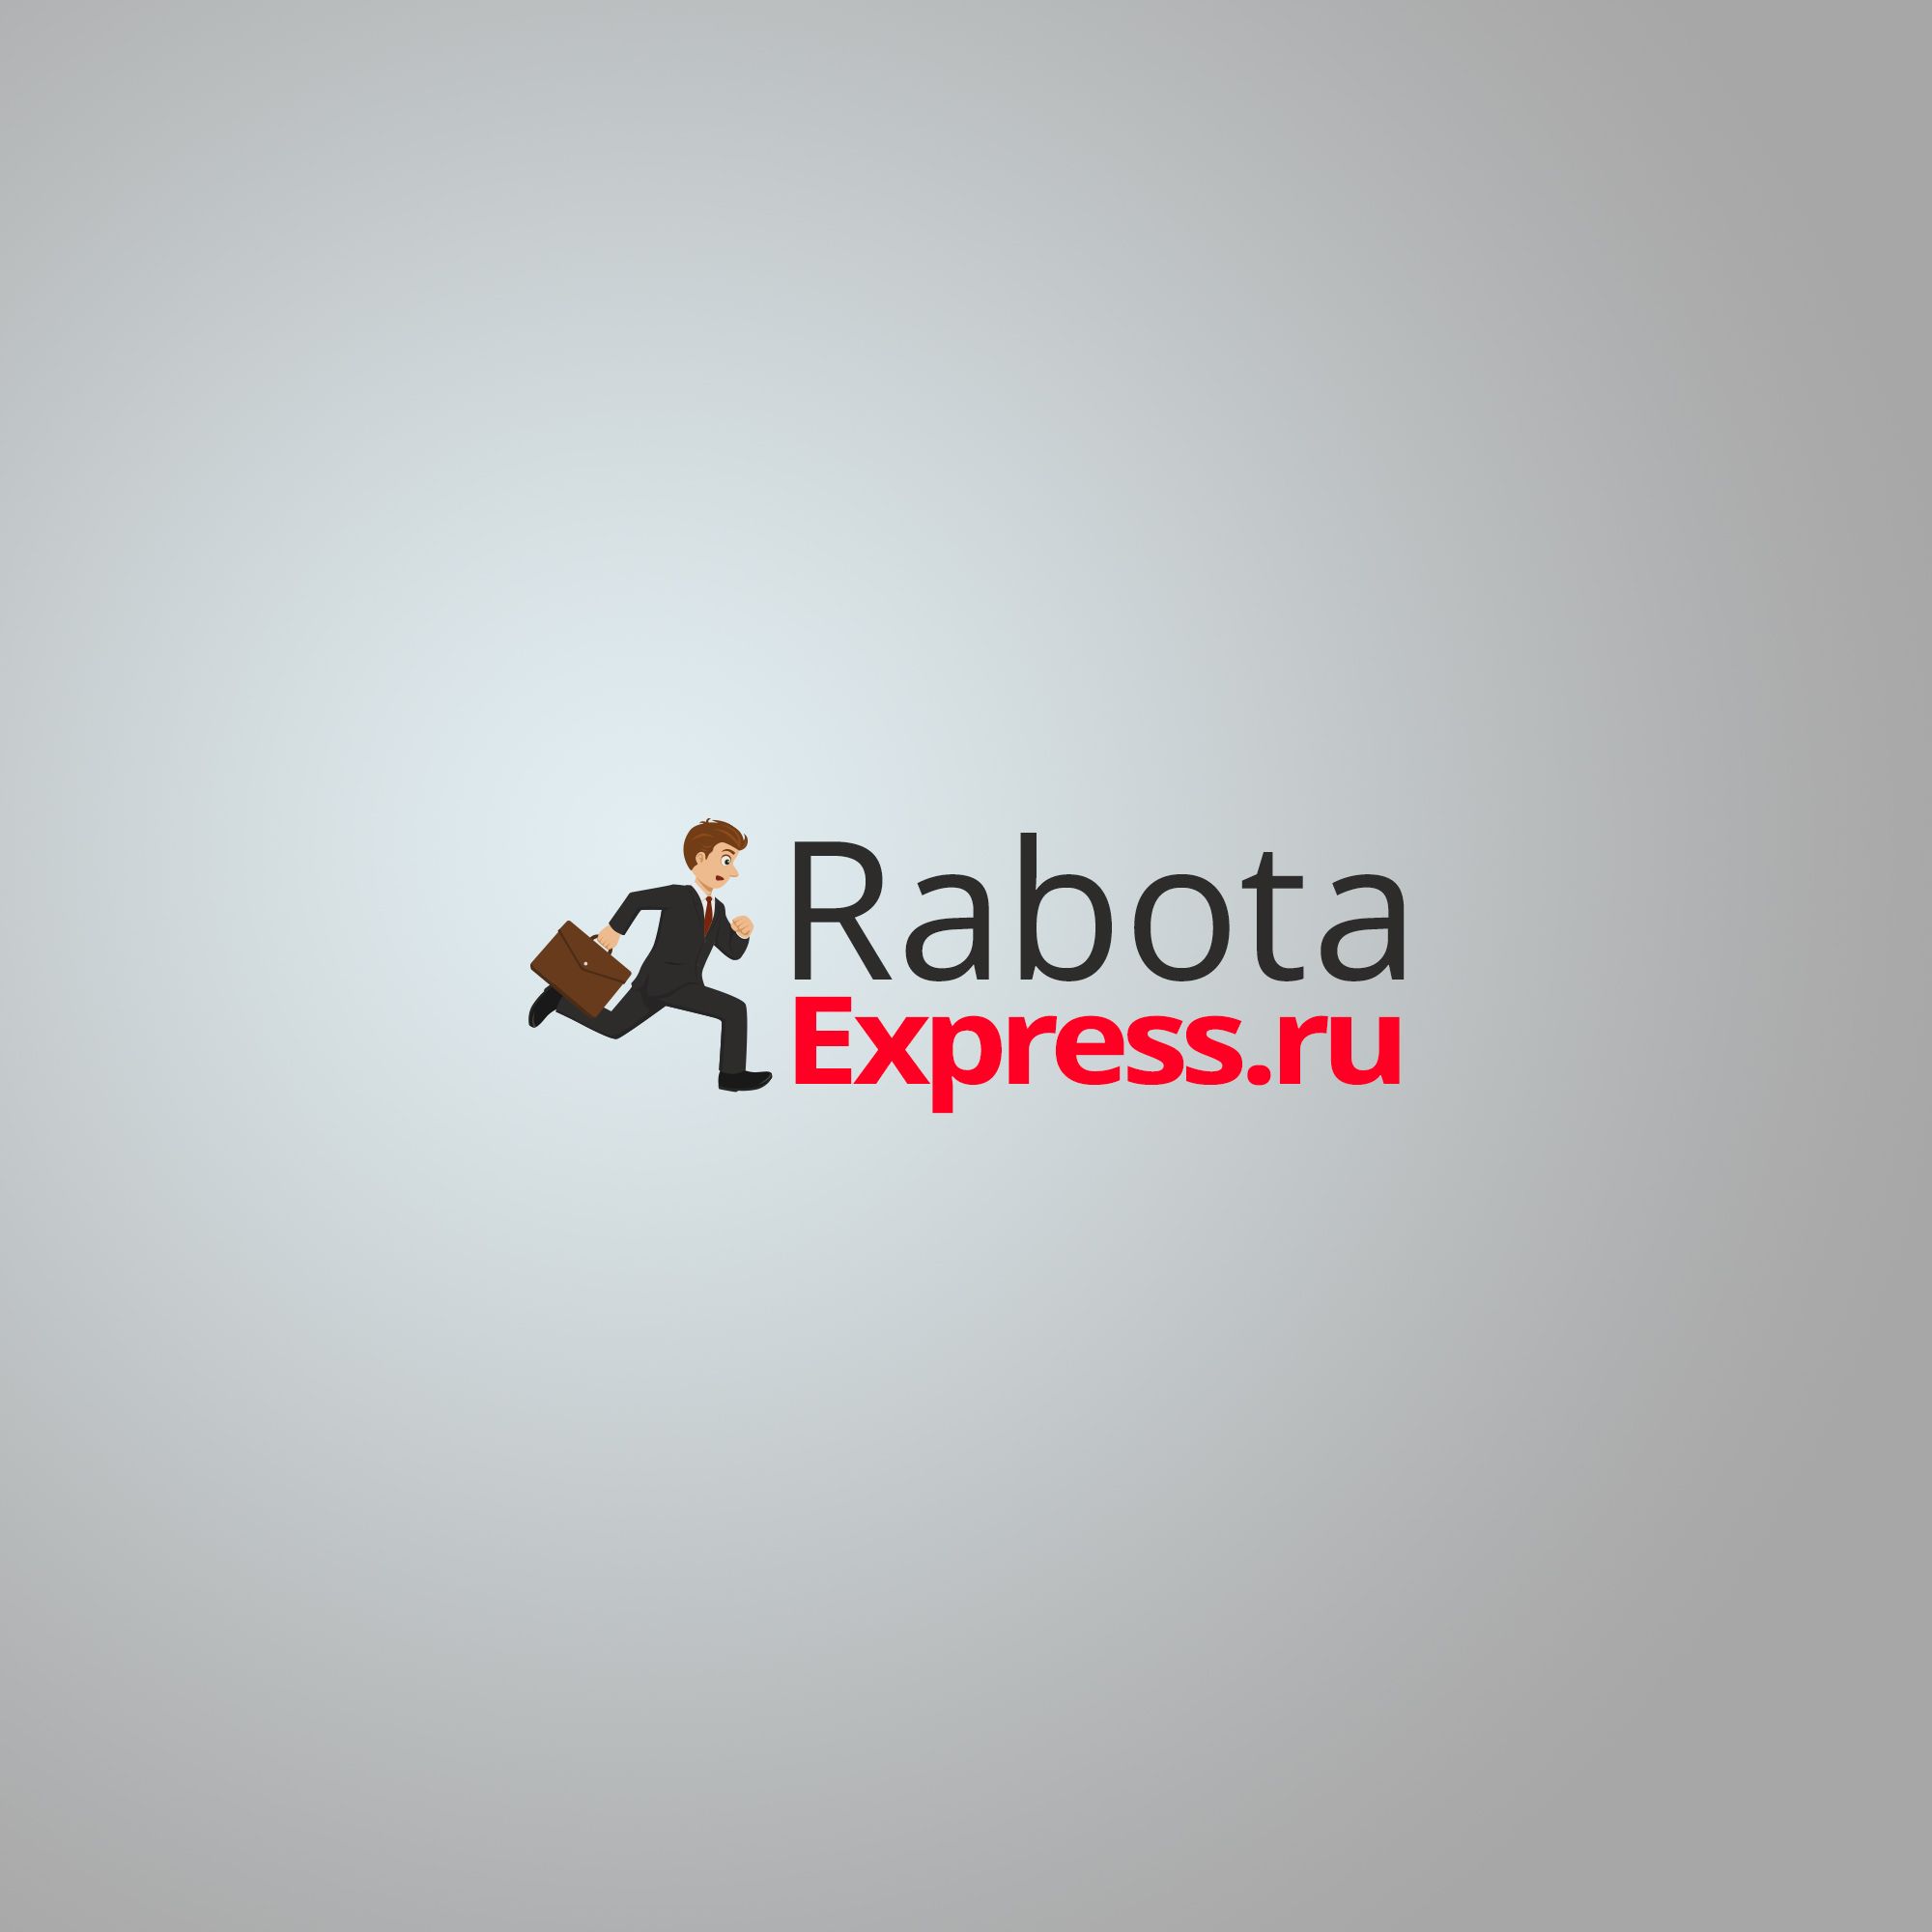 Логотип для RabotaExpress.ru (победителю - бонус) - дизайнер JMA